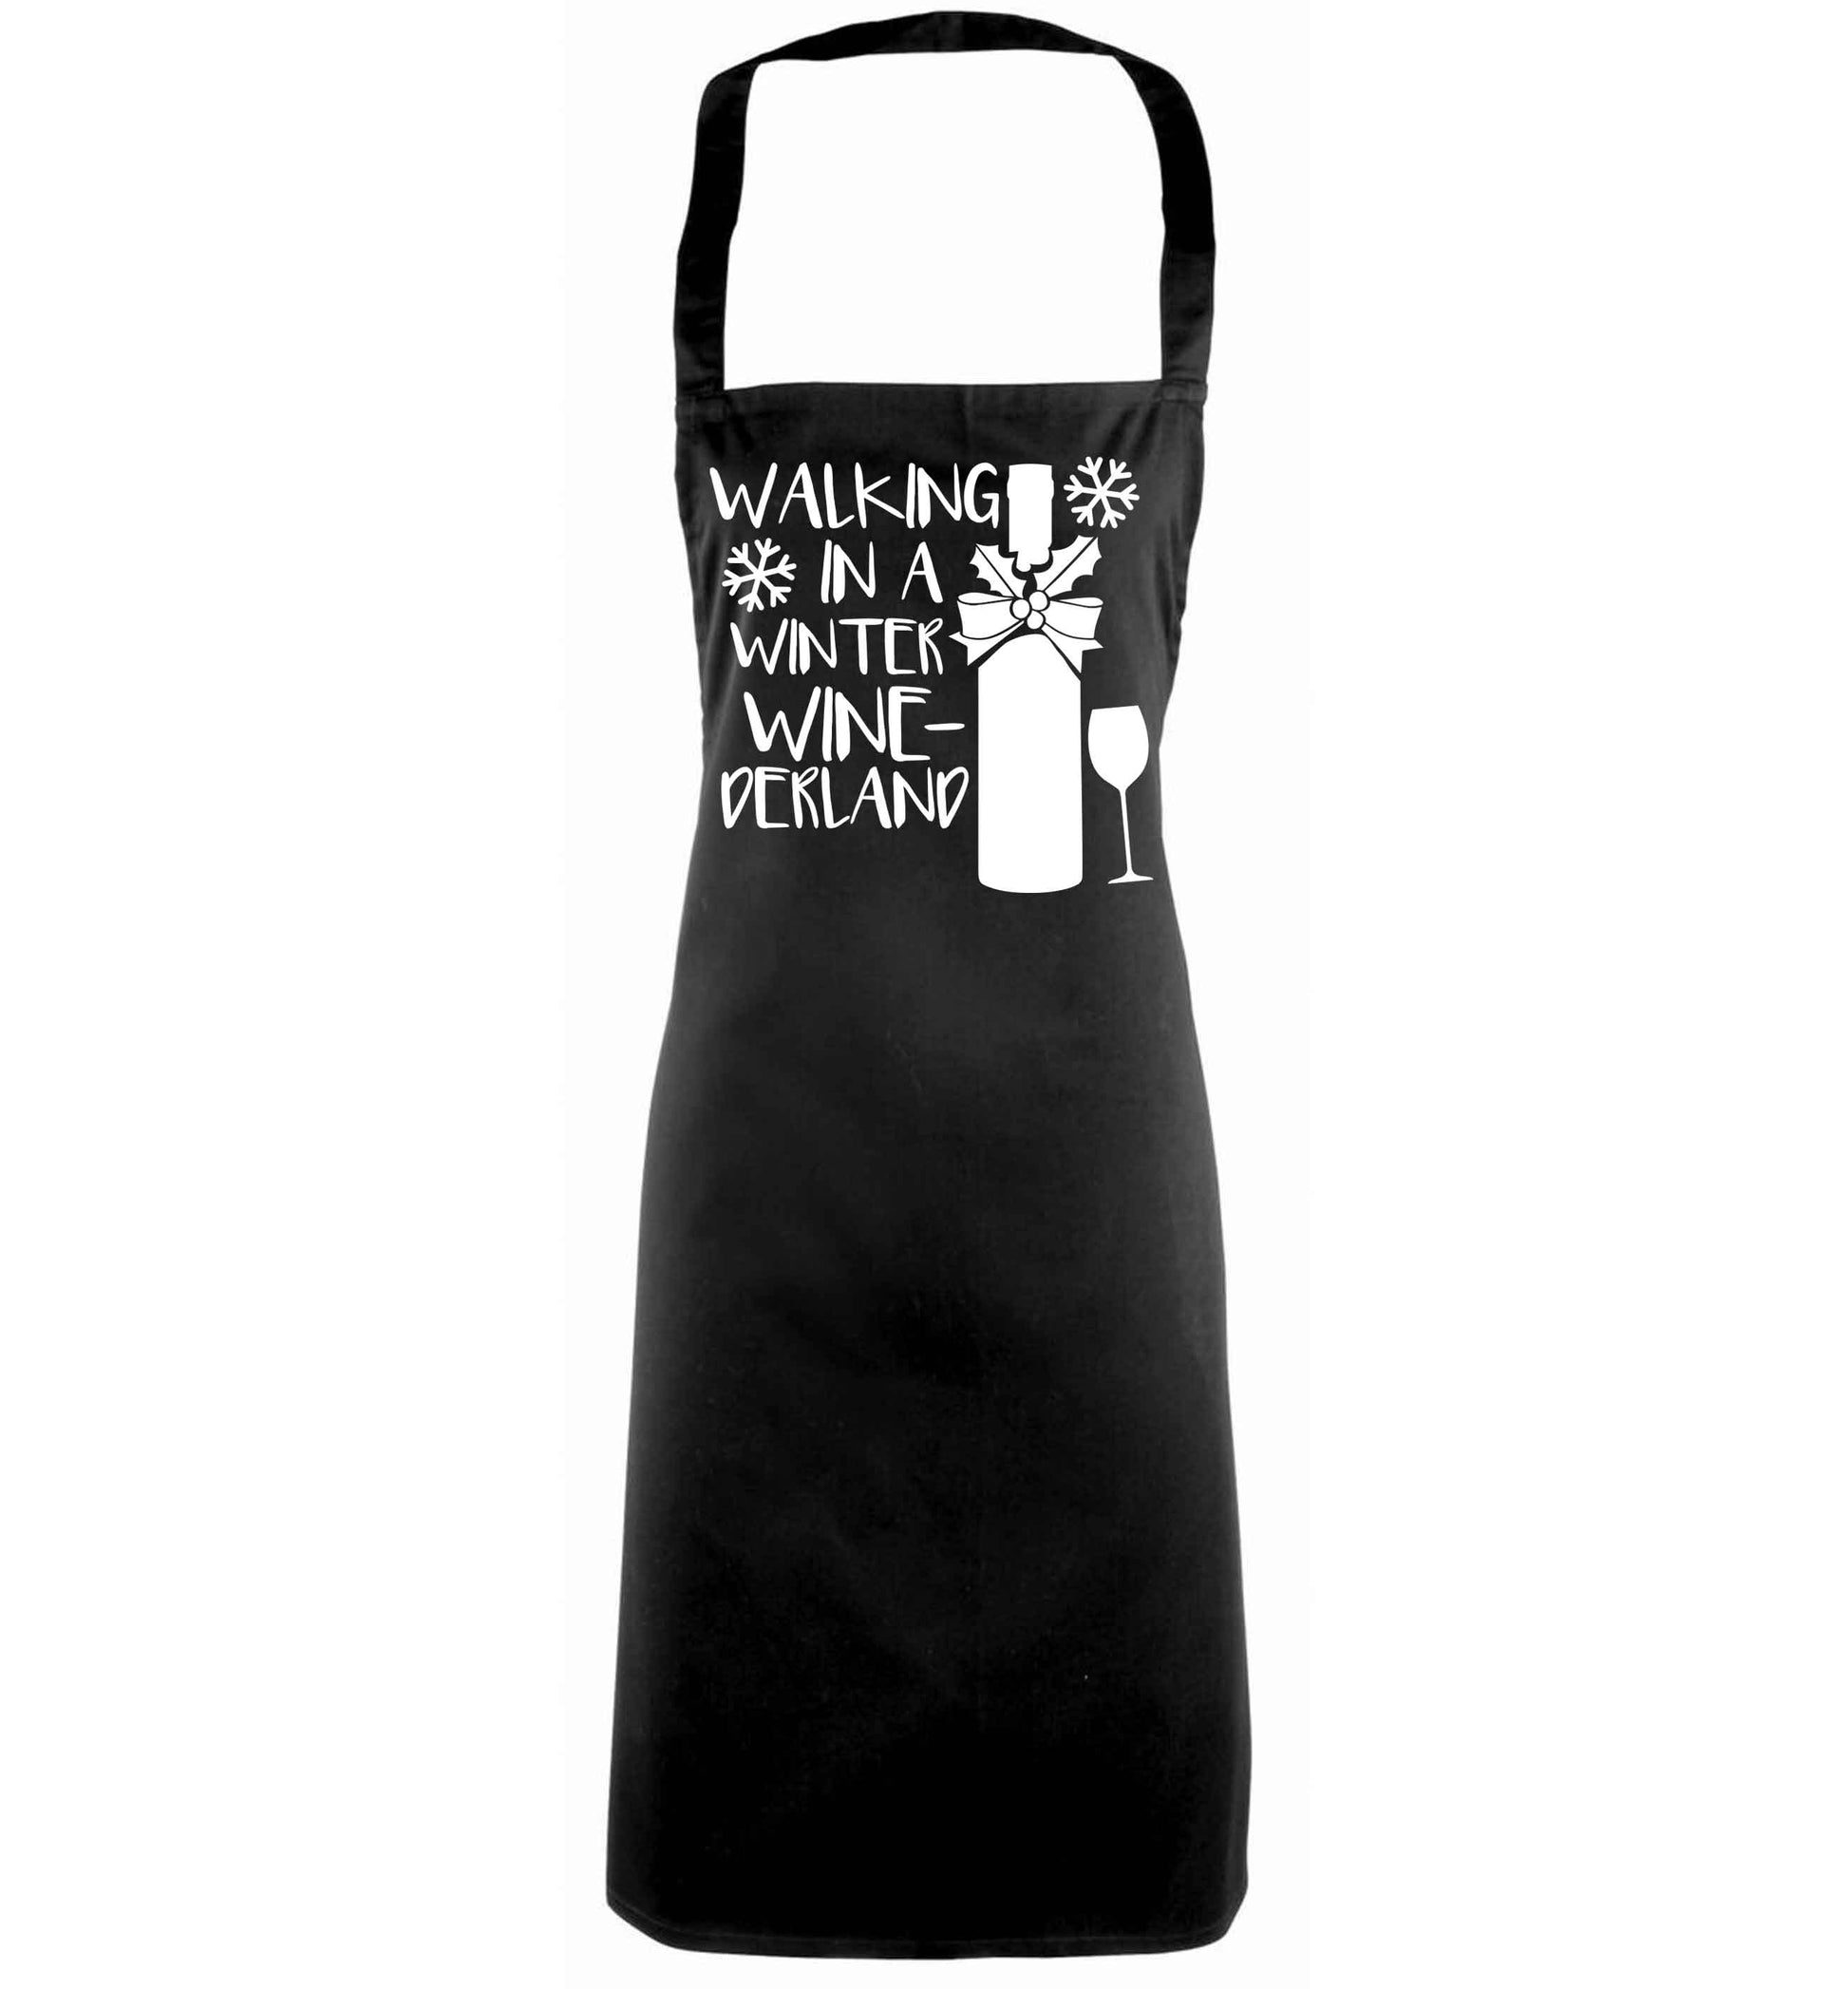 Walking in a wine-derwonderland black apron